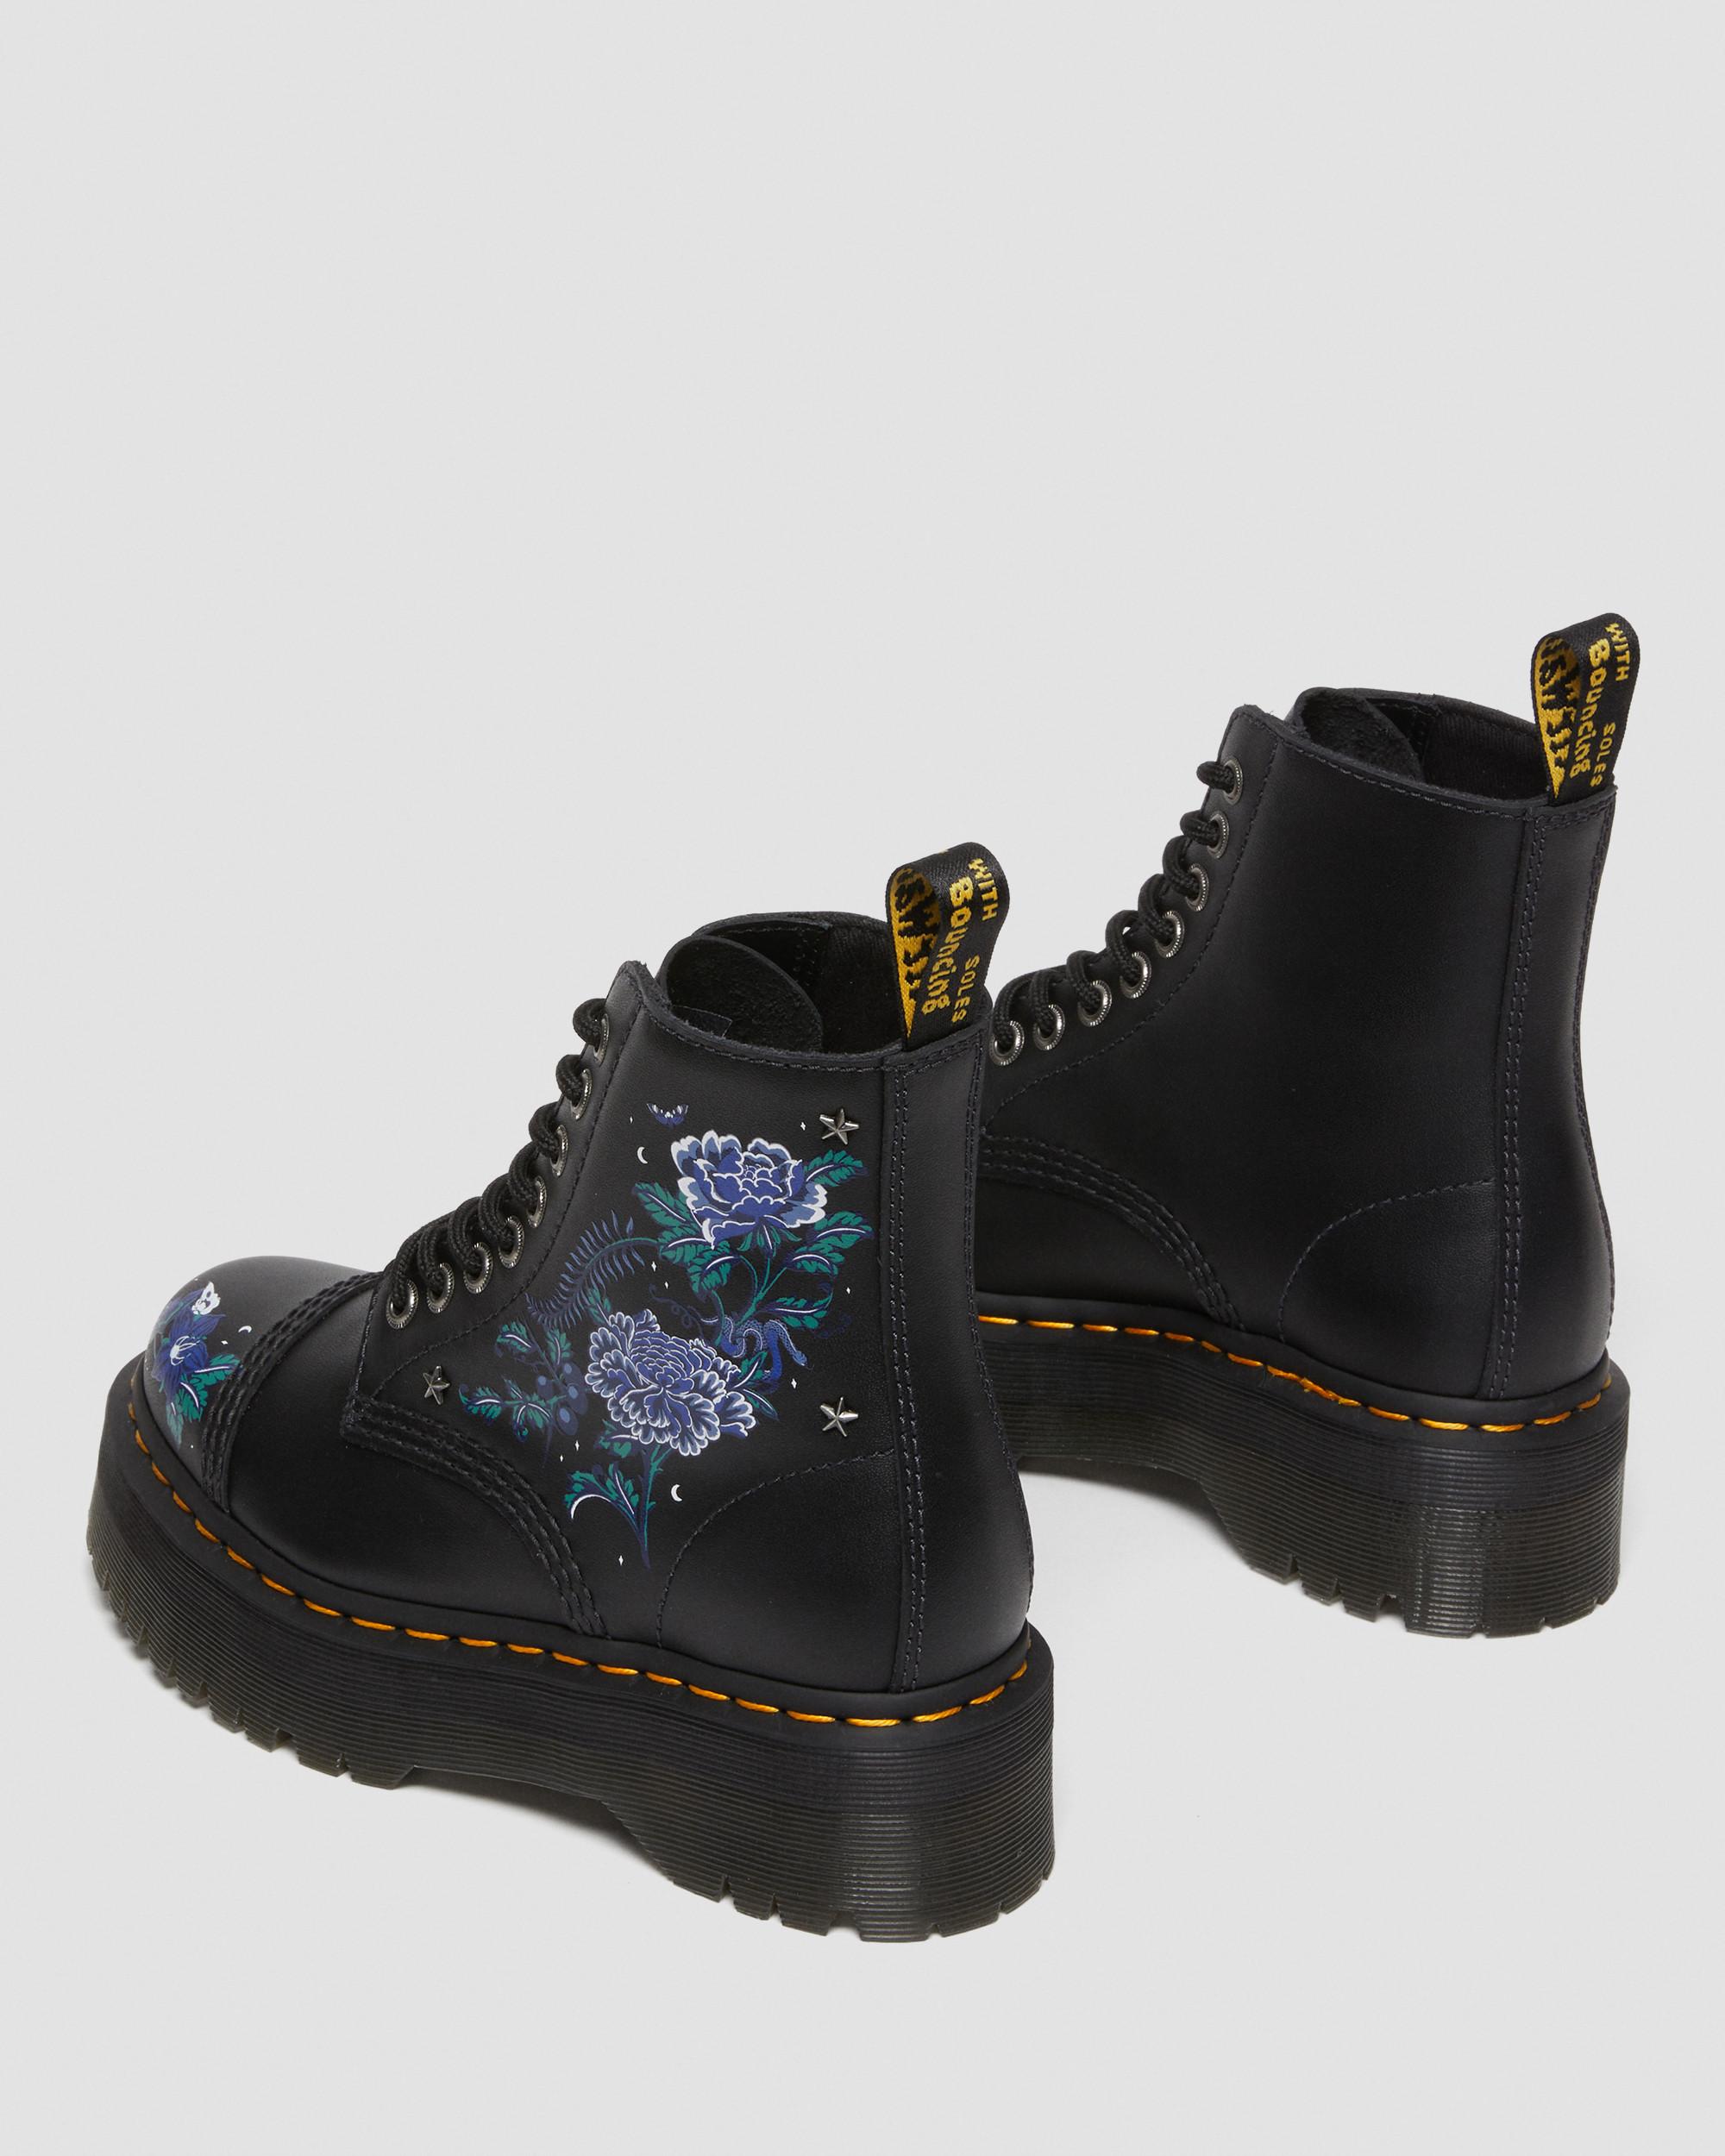 Sinclair Mystic Floral platformstøvler i læderSinclair Mystic Floral platformstøvler i læder Dr. Martens